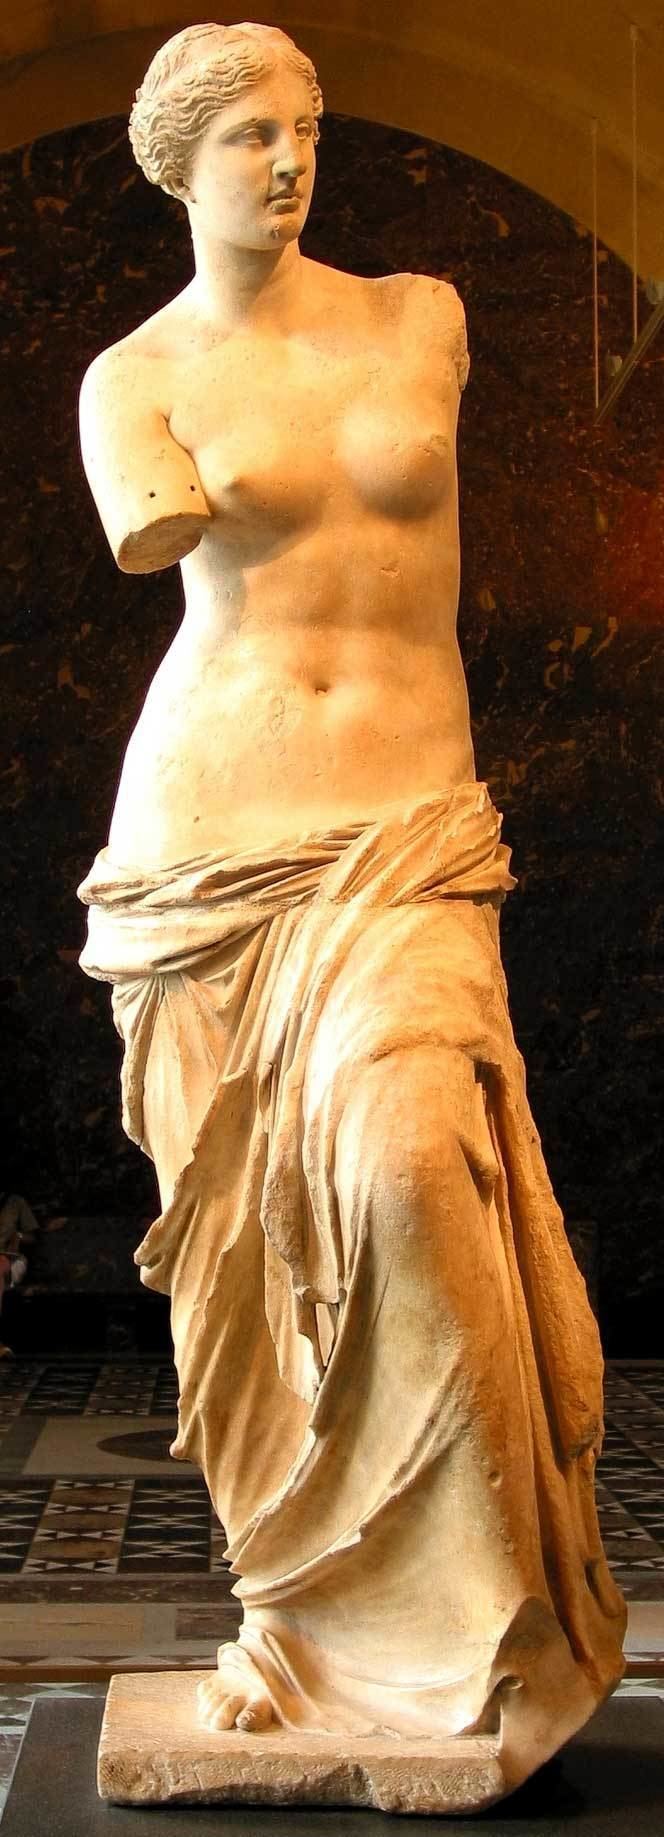 Venus de Milo Hellenistic Art Aphrodite known as the Venus de Milo 12